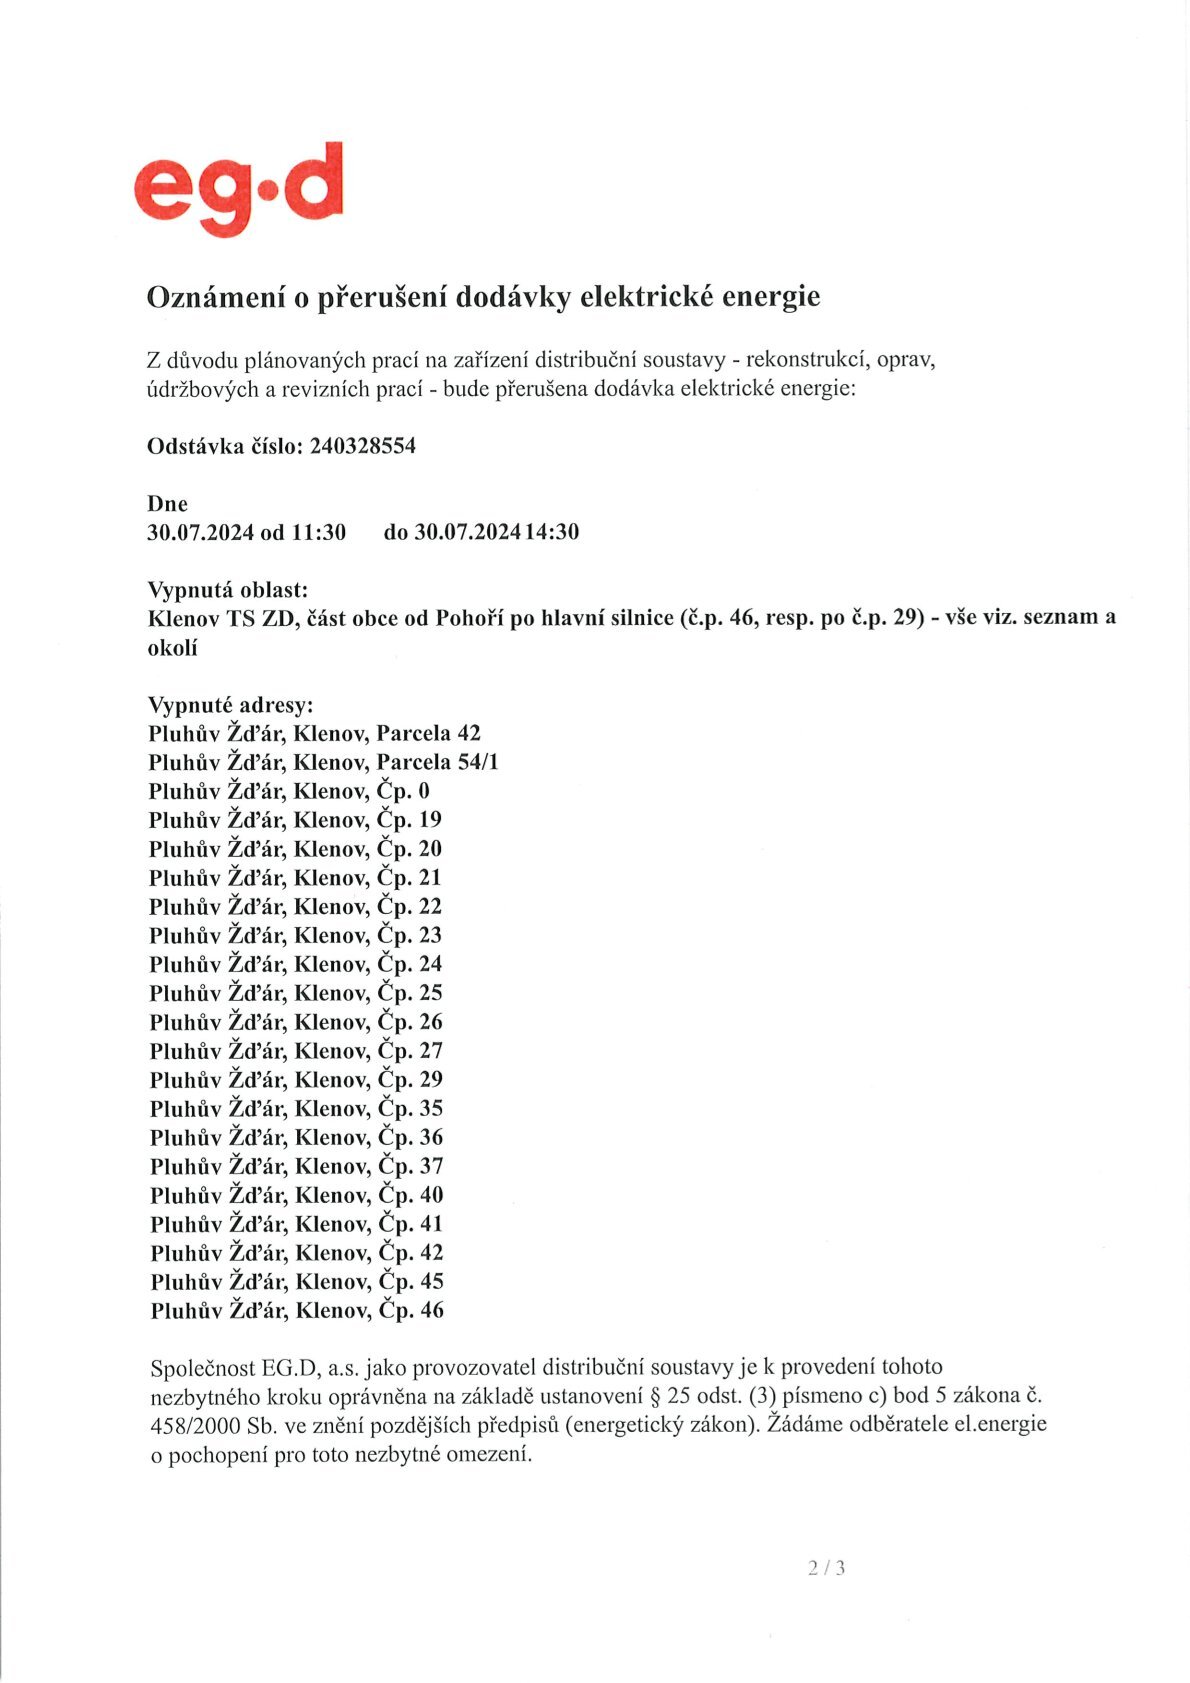 Oznámení o přerušení dodávek elektrické energie v Klenově dne 30.7.2024